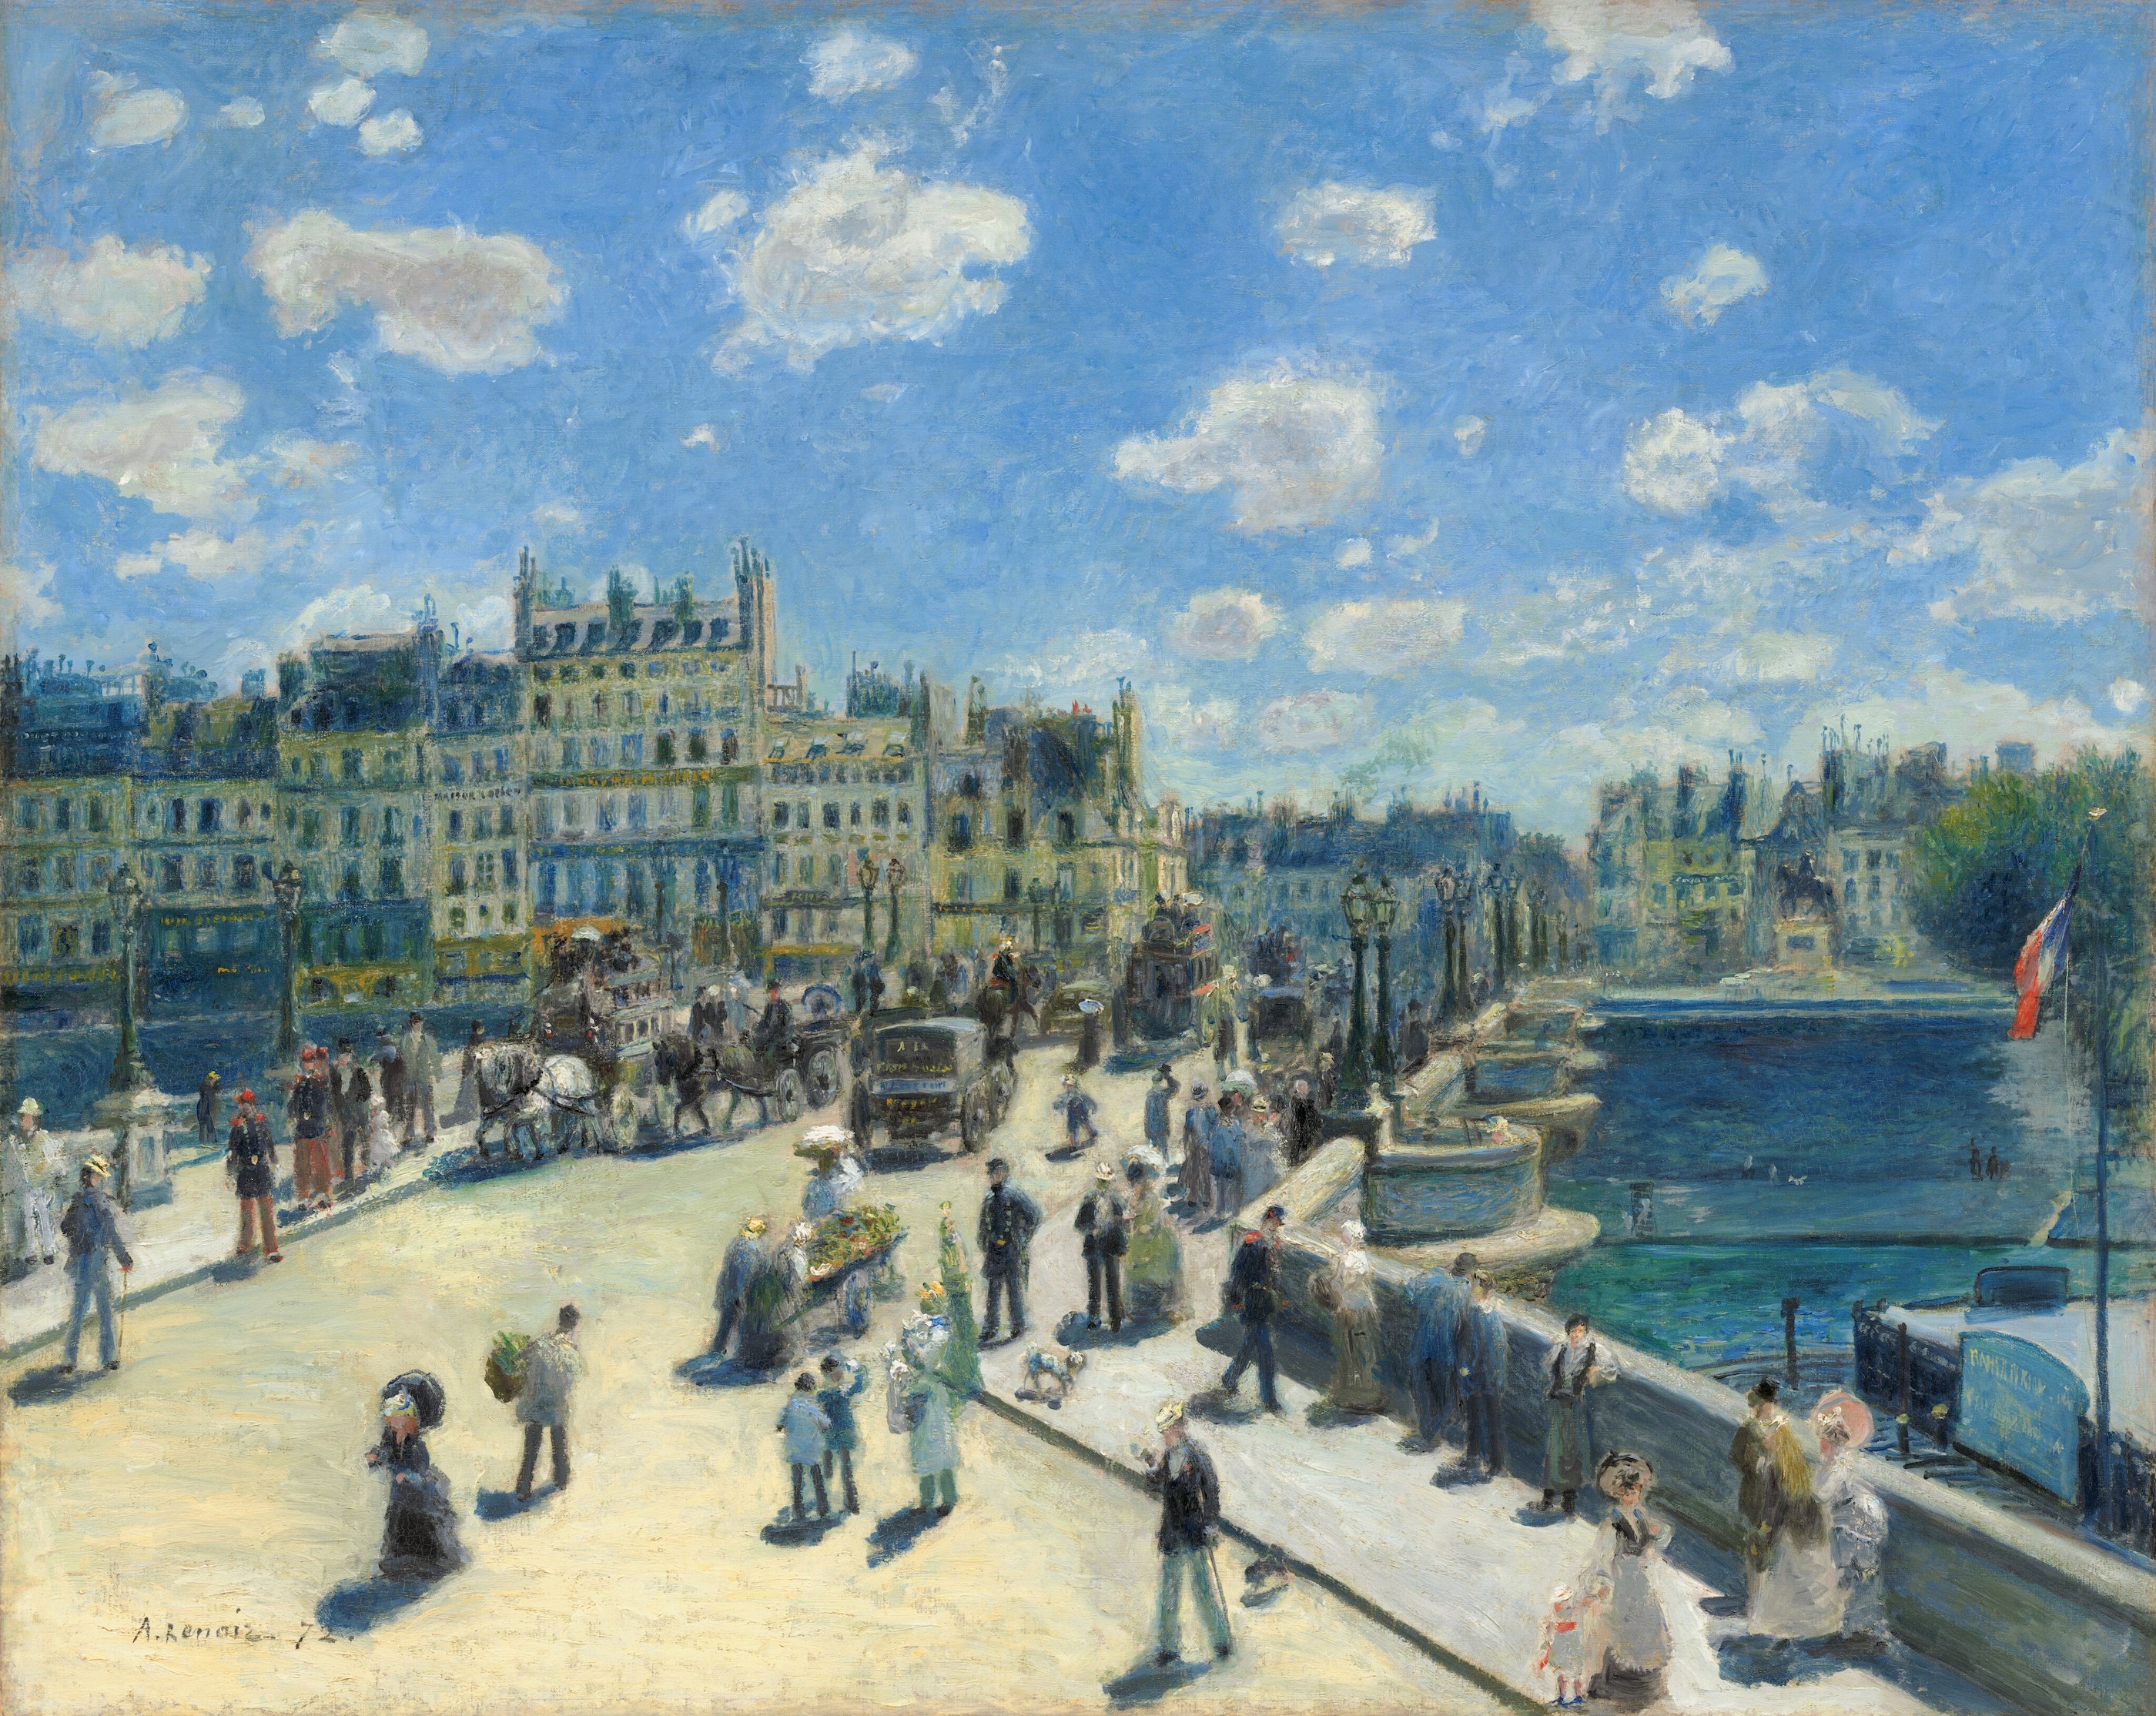 Le Pont Neuf Paris by Pierre-Auguste Renoir - 1872 - 75.3 x 93.7 cm 